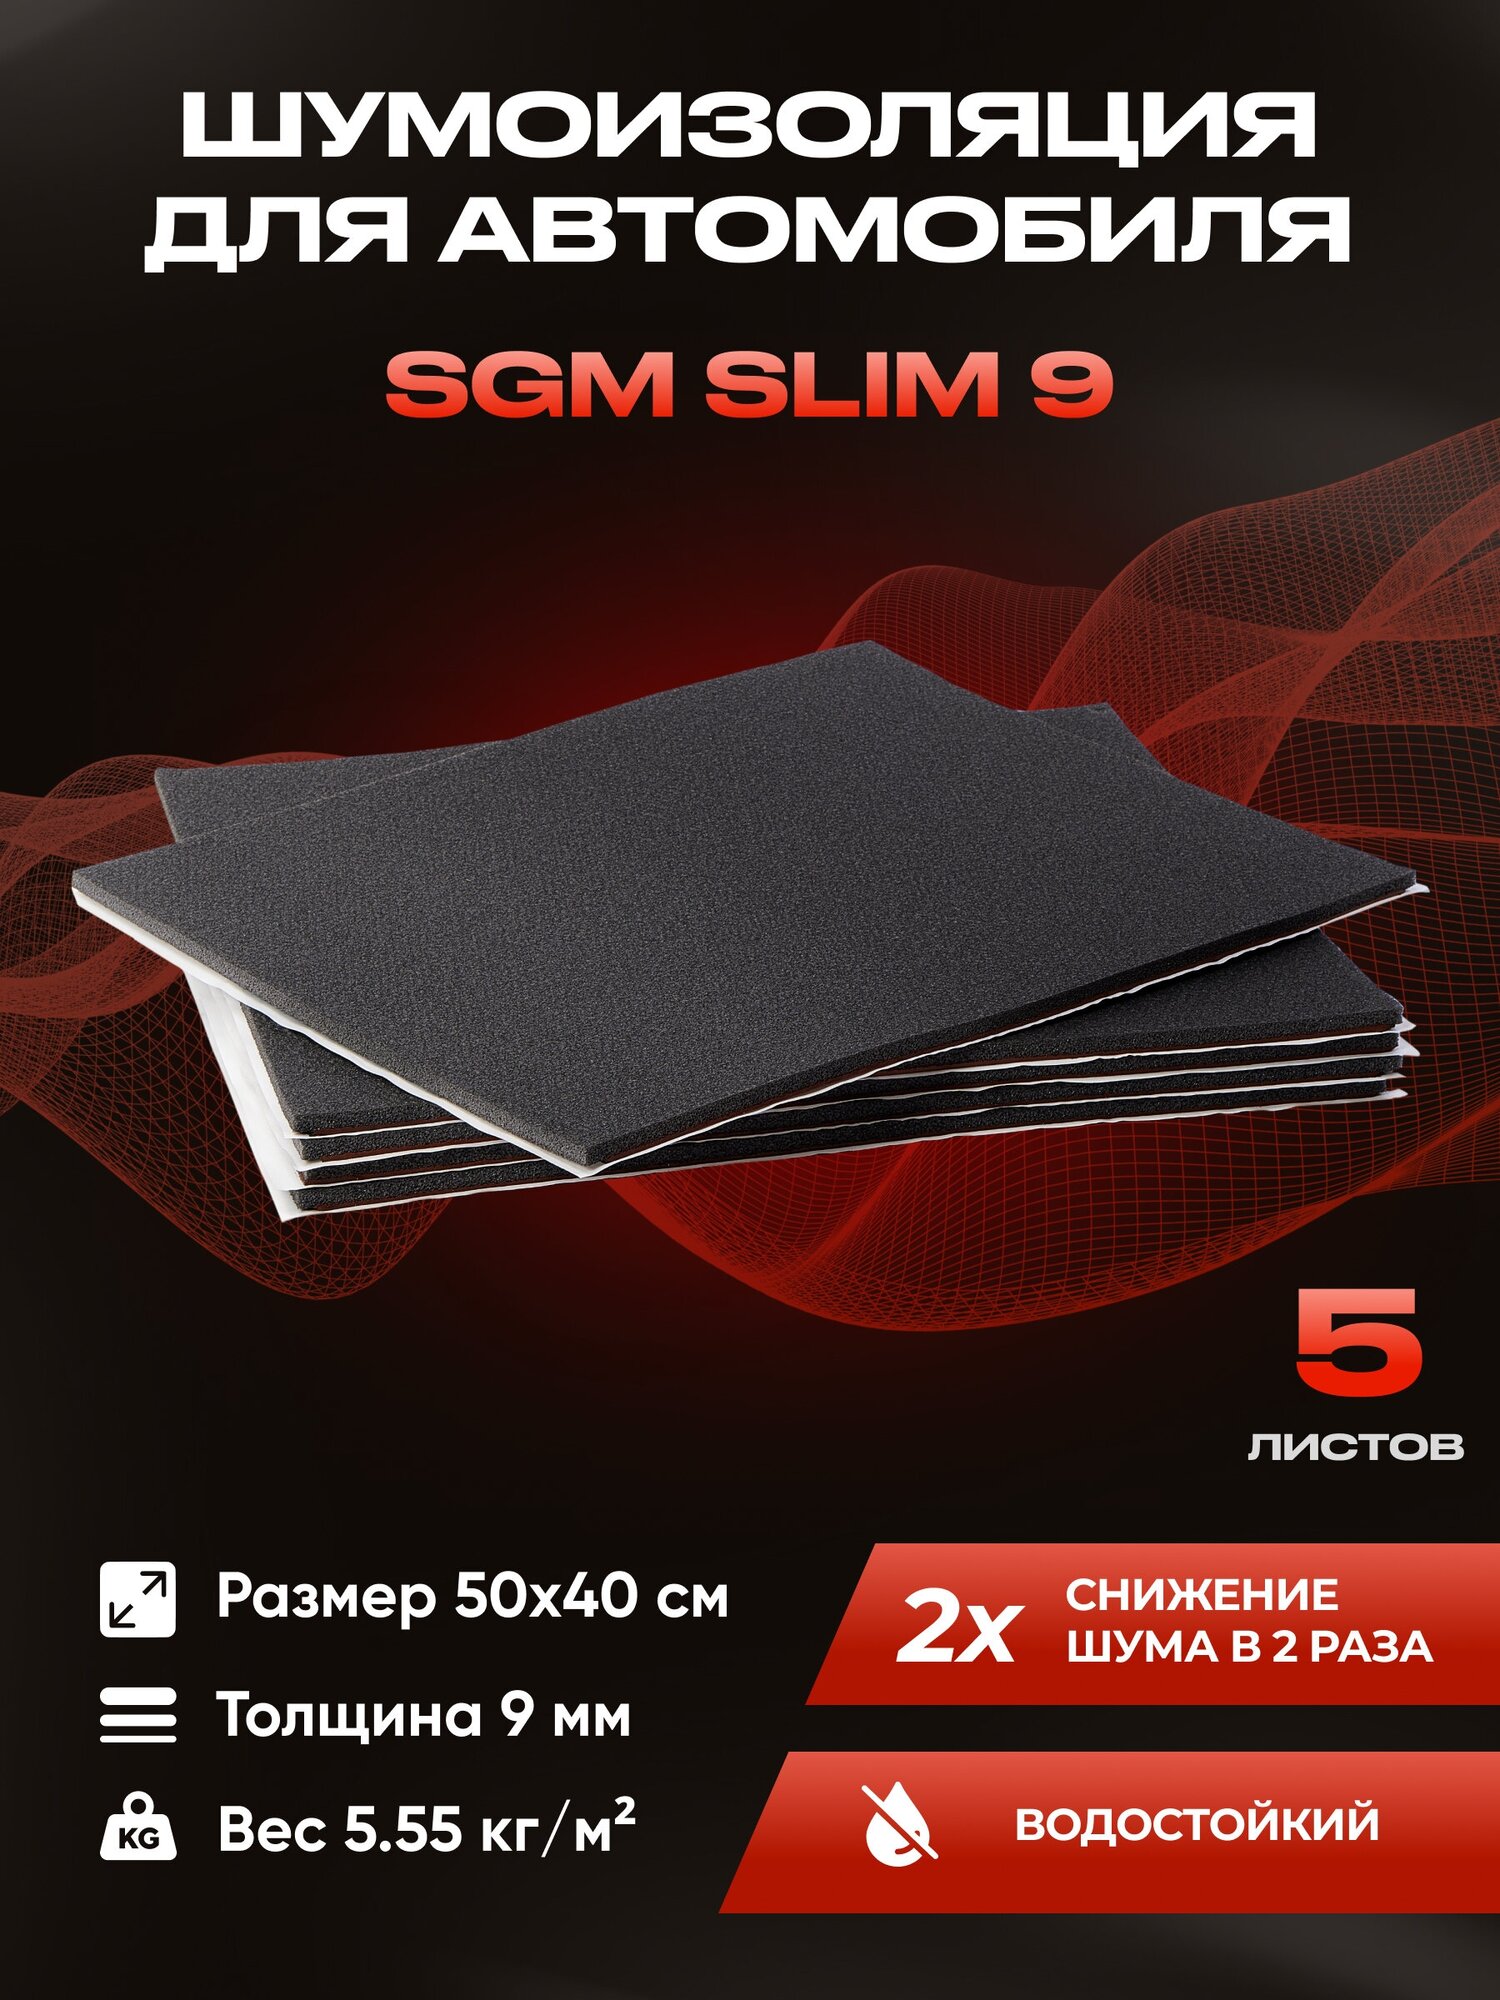 Шумоизоляция для автомобиля SGM Slim 9, 5 листов /Набор влагостойкой звукоизоляции с теплоизолятором/комплект самоклеящаяся шумка для авто